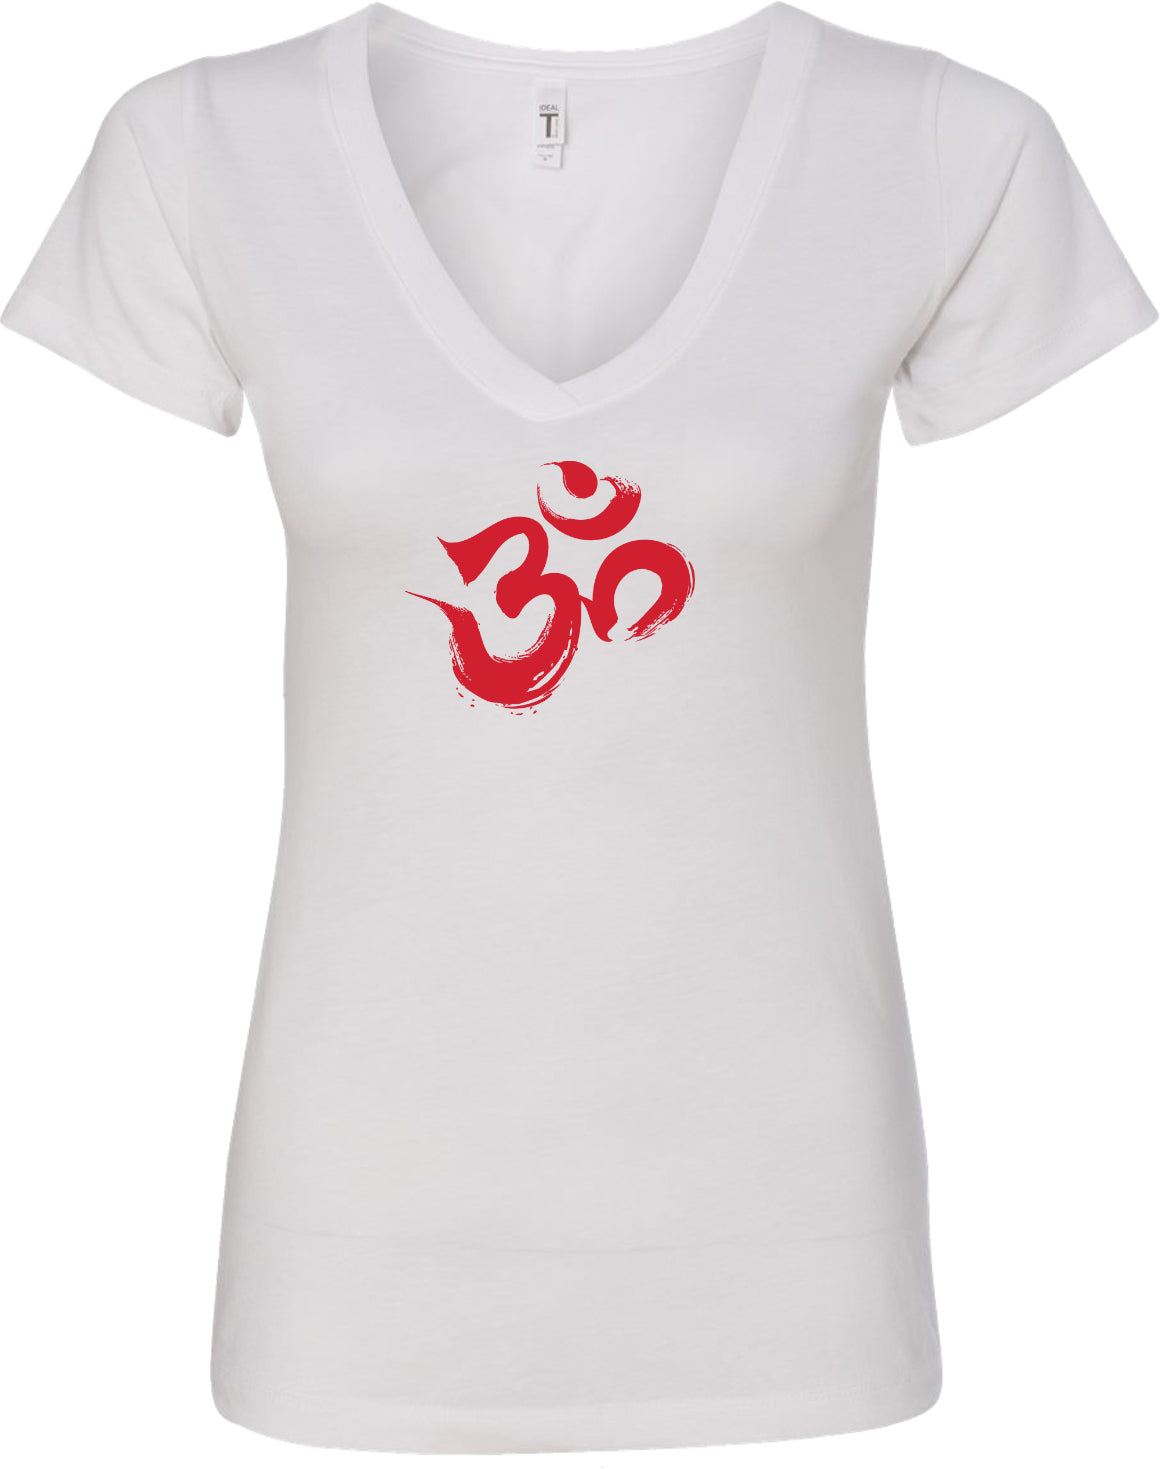 Red Brushstroke AUM Ideal V-neck Yoga Tee Shirt